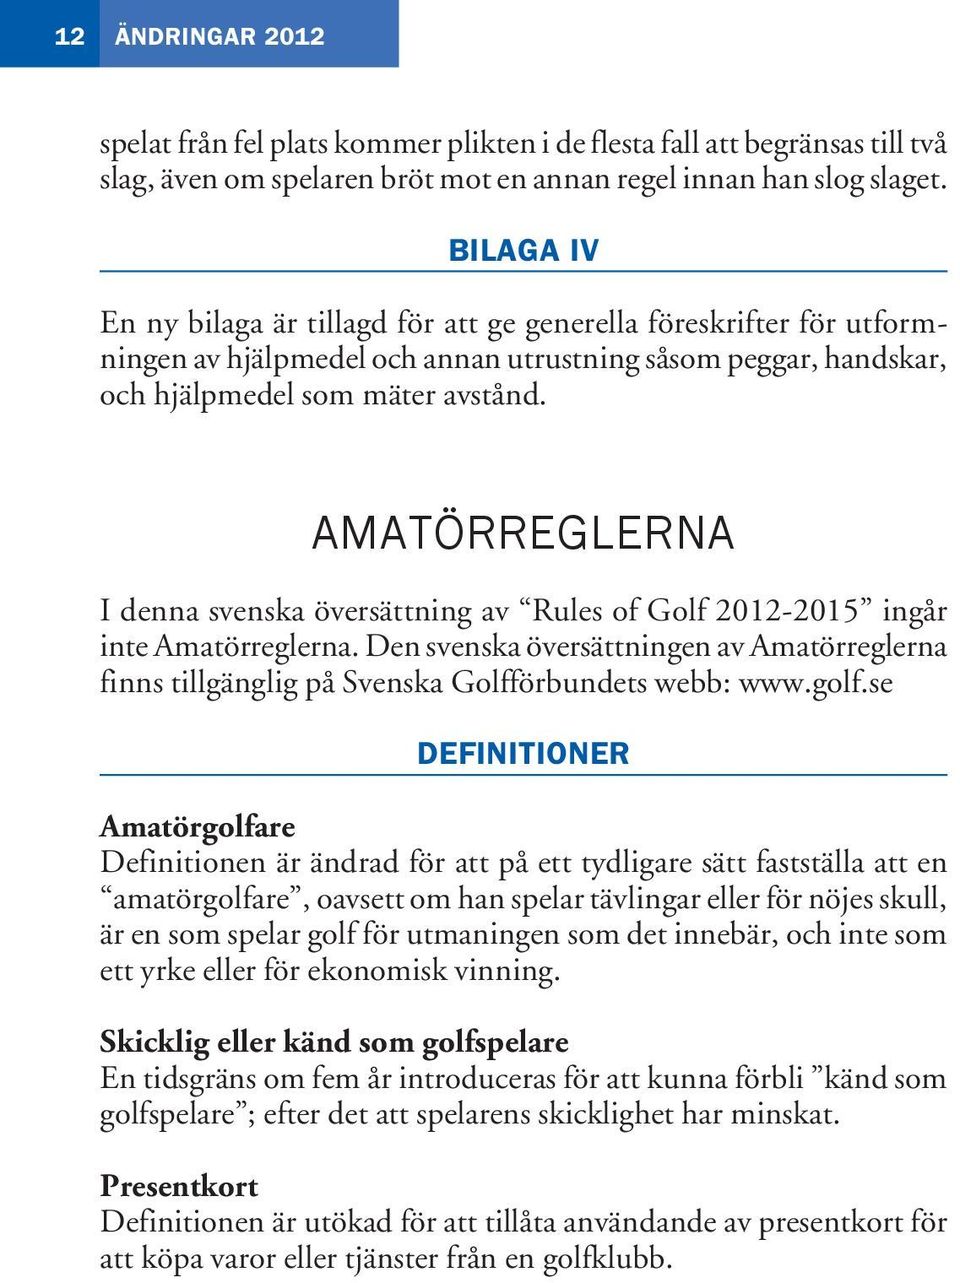 amatörreglerna I denna svenska översättning av Rules of Golf 2012-2015 ingår inte Amatörreglerna. Den svenska översättningen av Amatörreglerna finns tillgänglig på Svenska Golfförbundets webb: www.